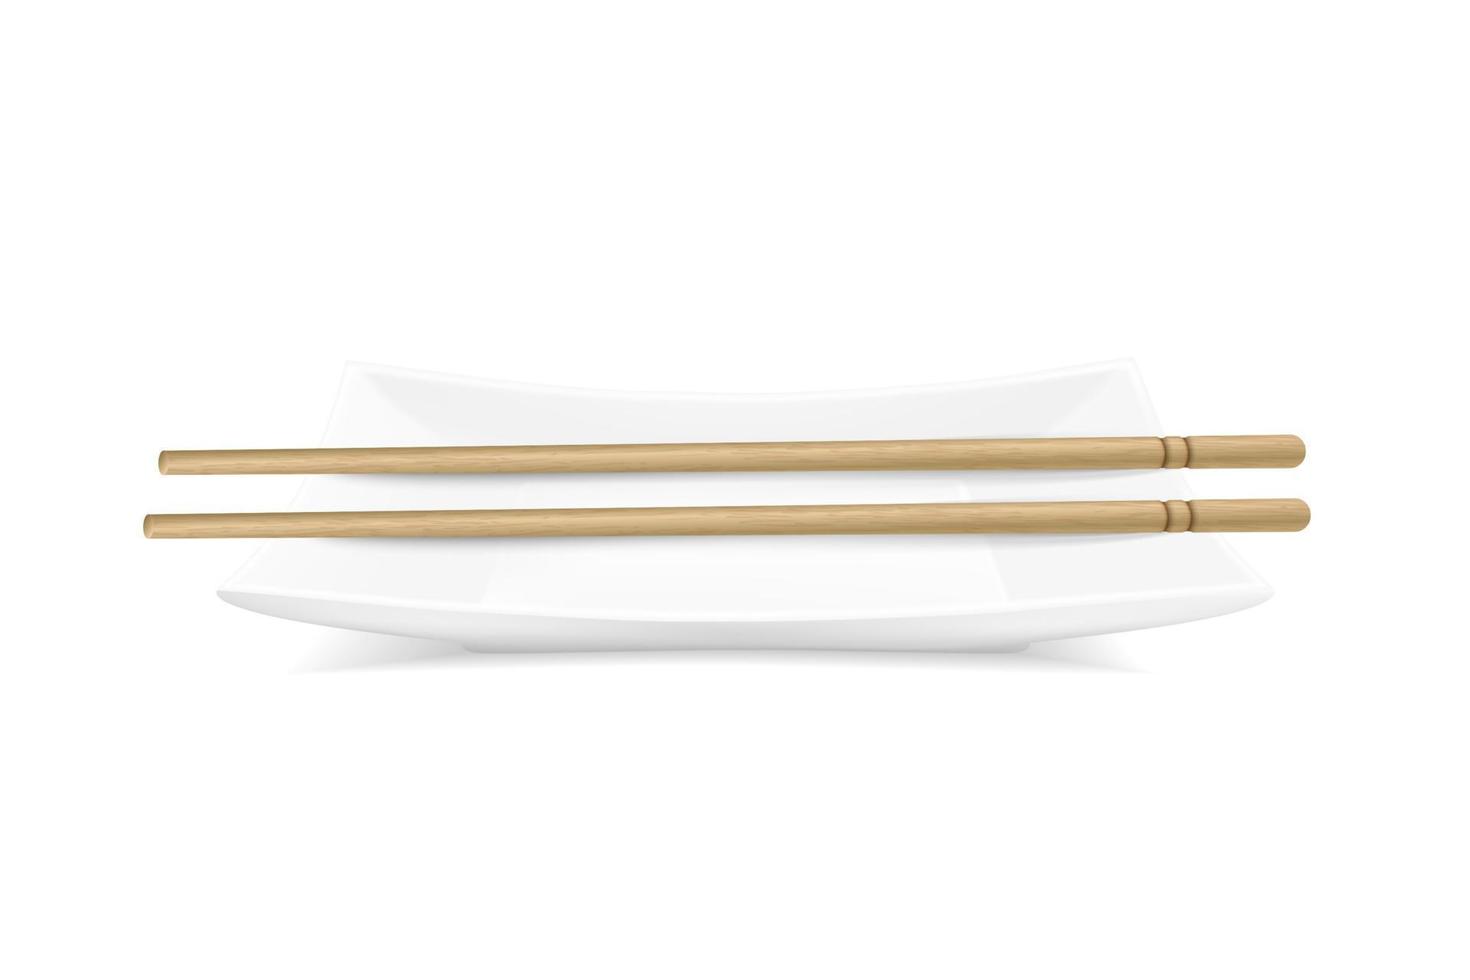 placa retangular realista de vetor com varas de bambu. ilustração de serviço de mesa de sushi. visão do topo